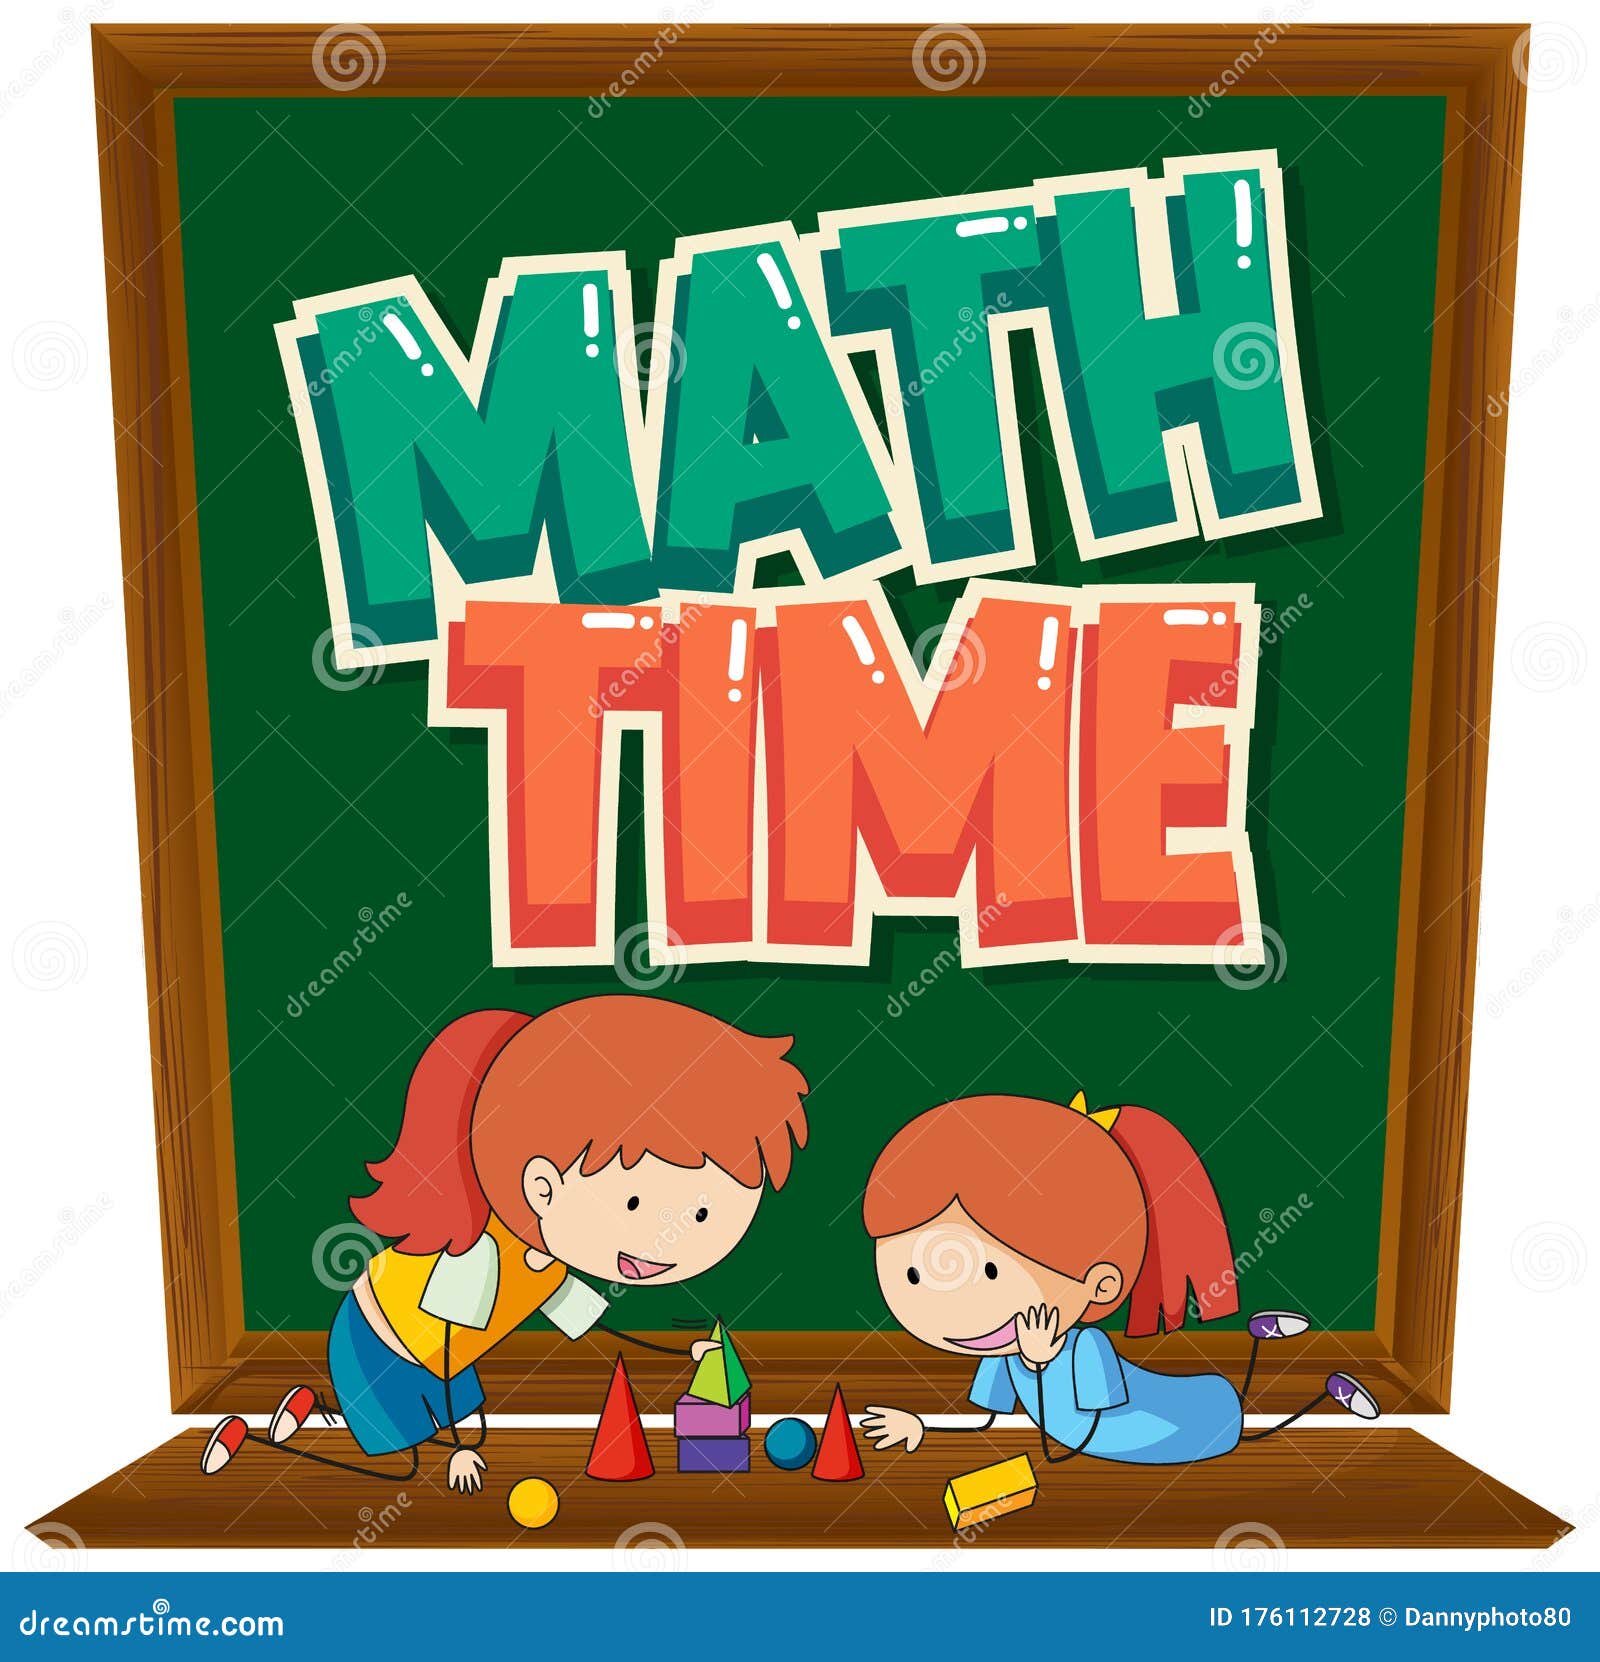 Hình nền học toán hai em nhỏ: Bạn đang tìm kiếm một hình nền lý tưởng cho việc học toán của mình? Hình ảnh này chắc chắn sẽ giúp bạn tập trung vào việc học một cách dễ dàng và hiệu quả nhất. Cùng khám phá và học toán thật tốt nhé! 